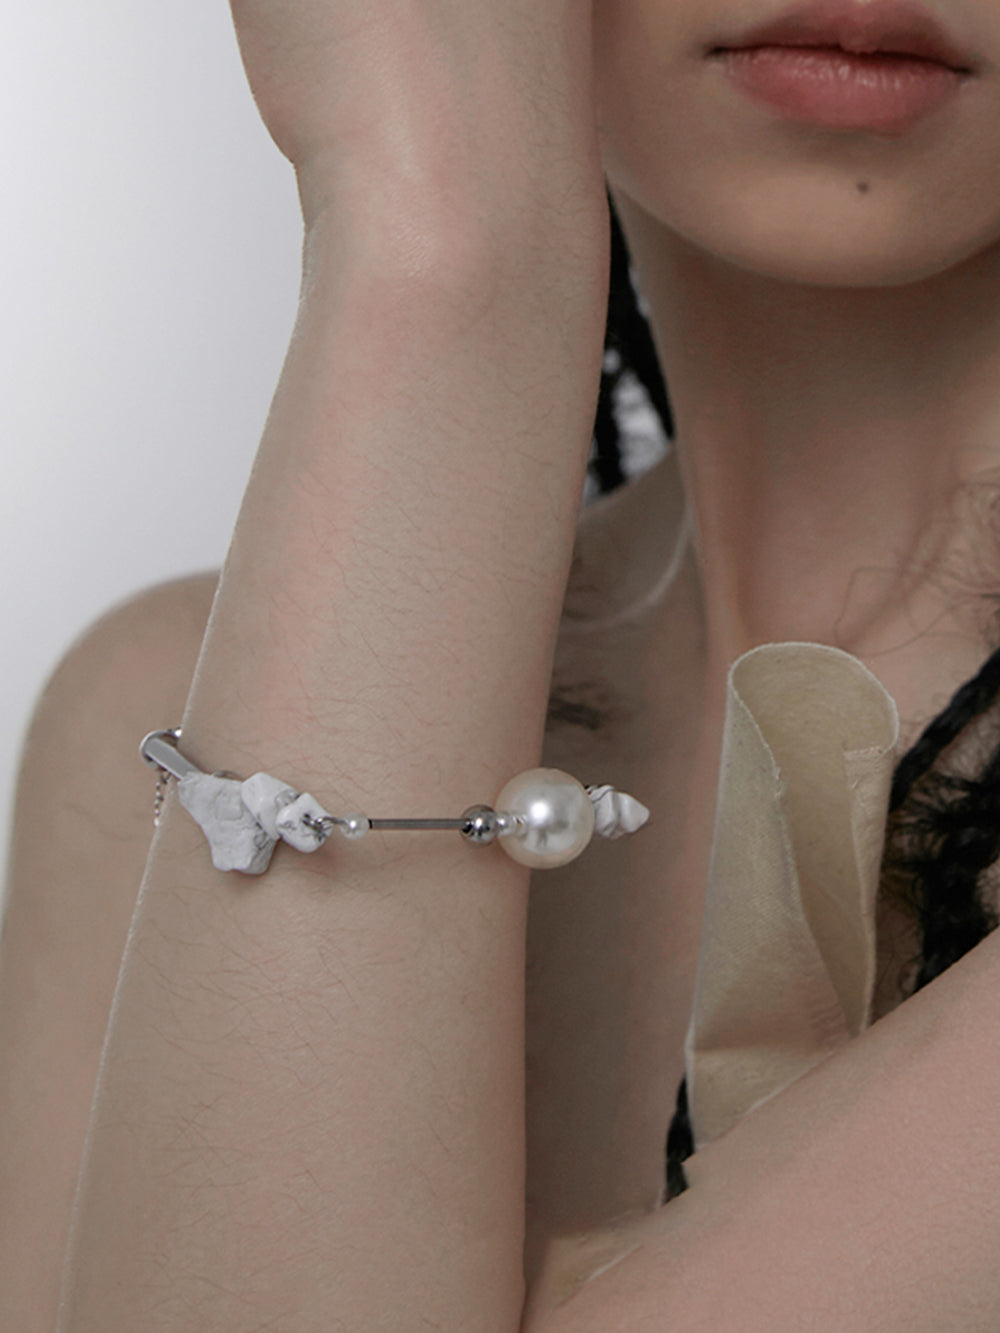 MUKTANK×DARKNESS-White Series White Pine Gravel Pipe Linked Adjustable Bracelet / D Bracelet